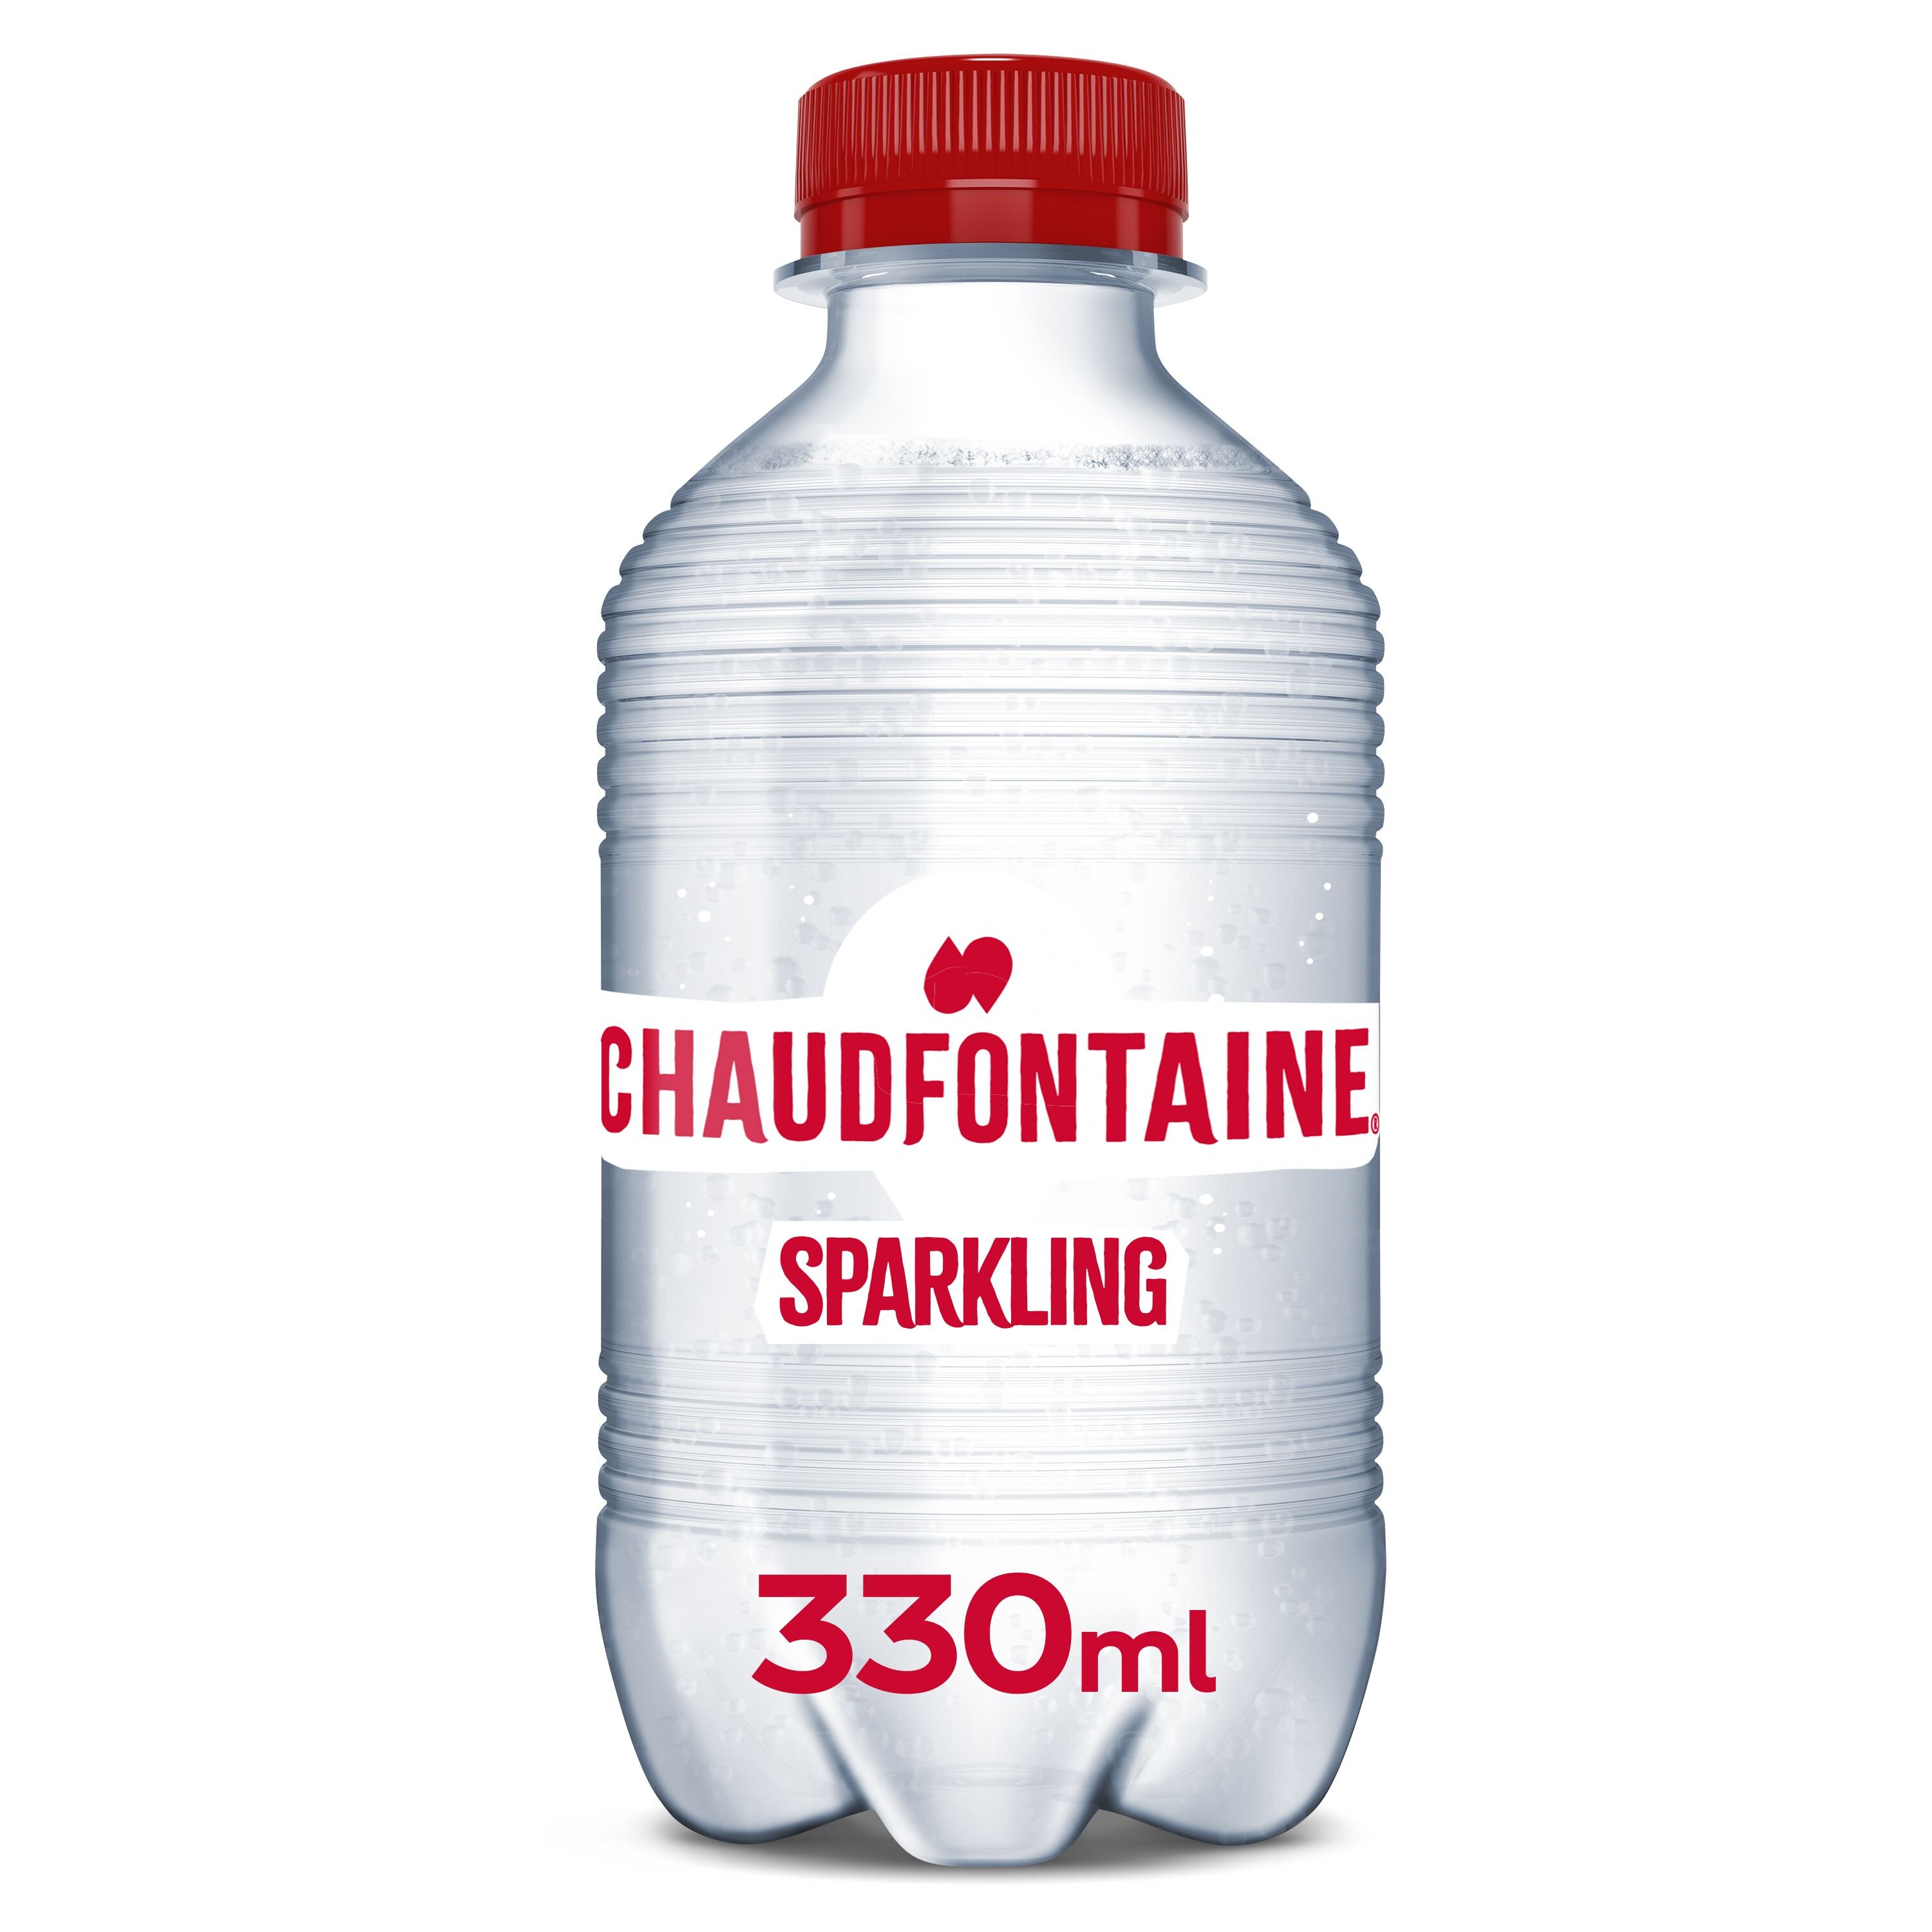 Chaudfontaine Sparkling Water 33cl PET bottle